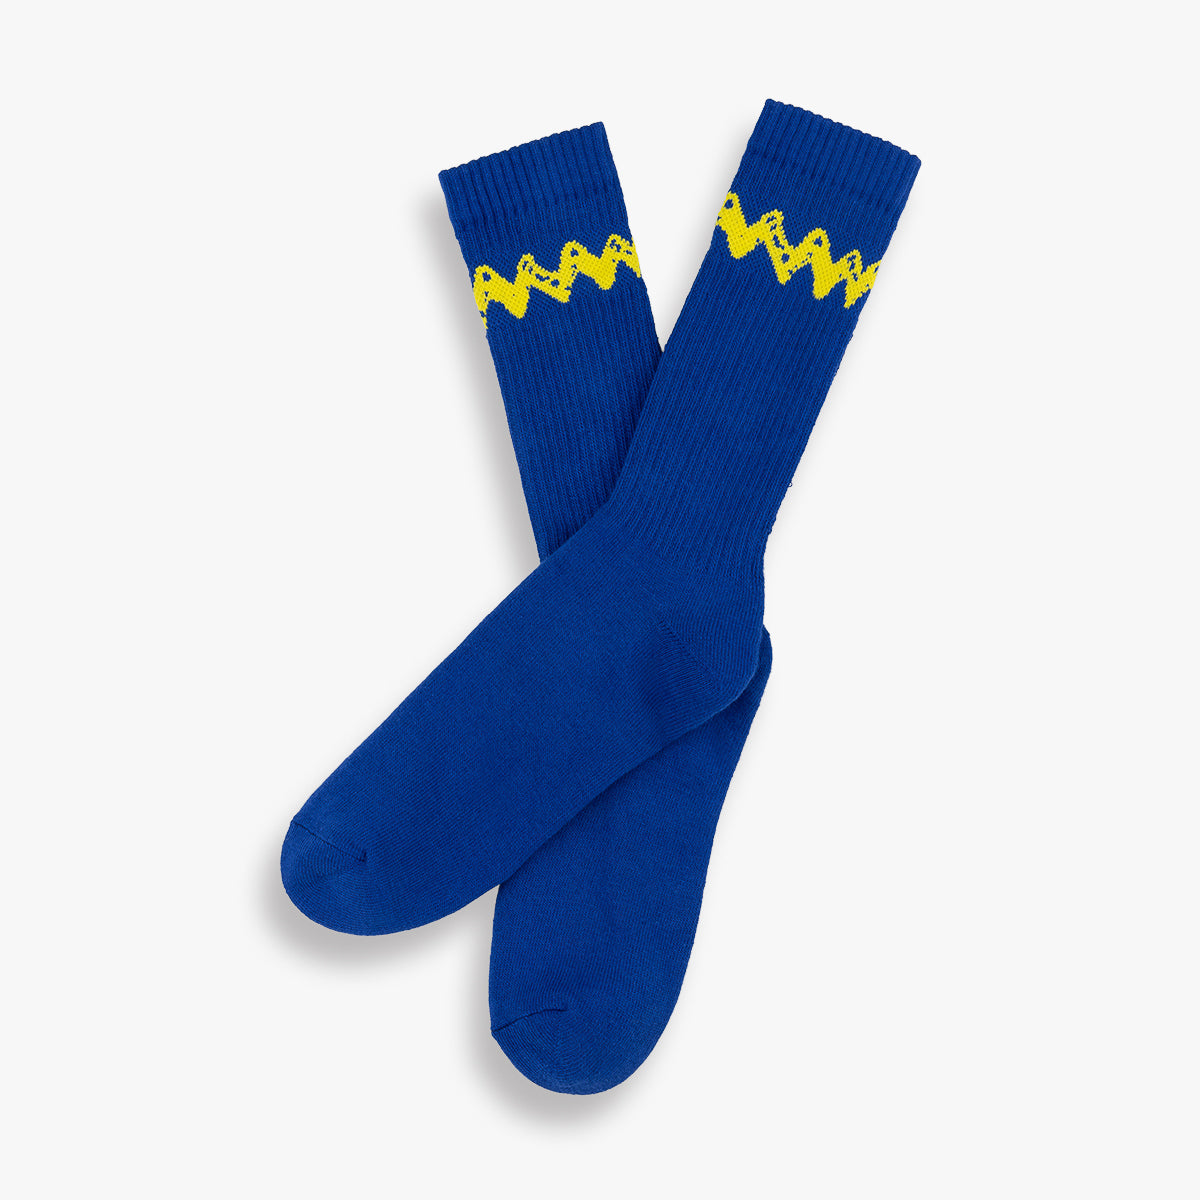 Charlie Brown Socks